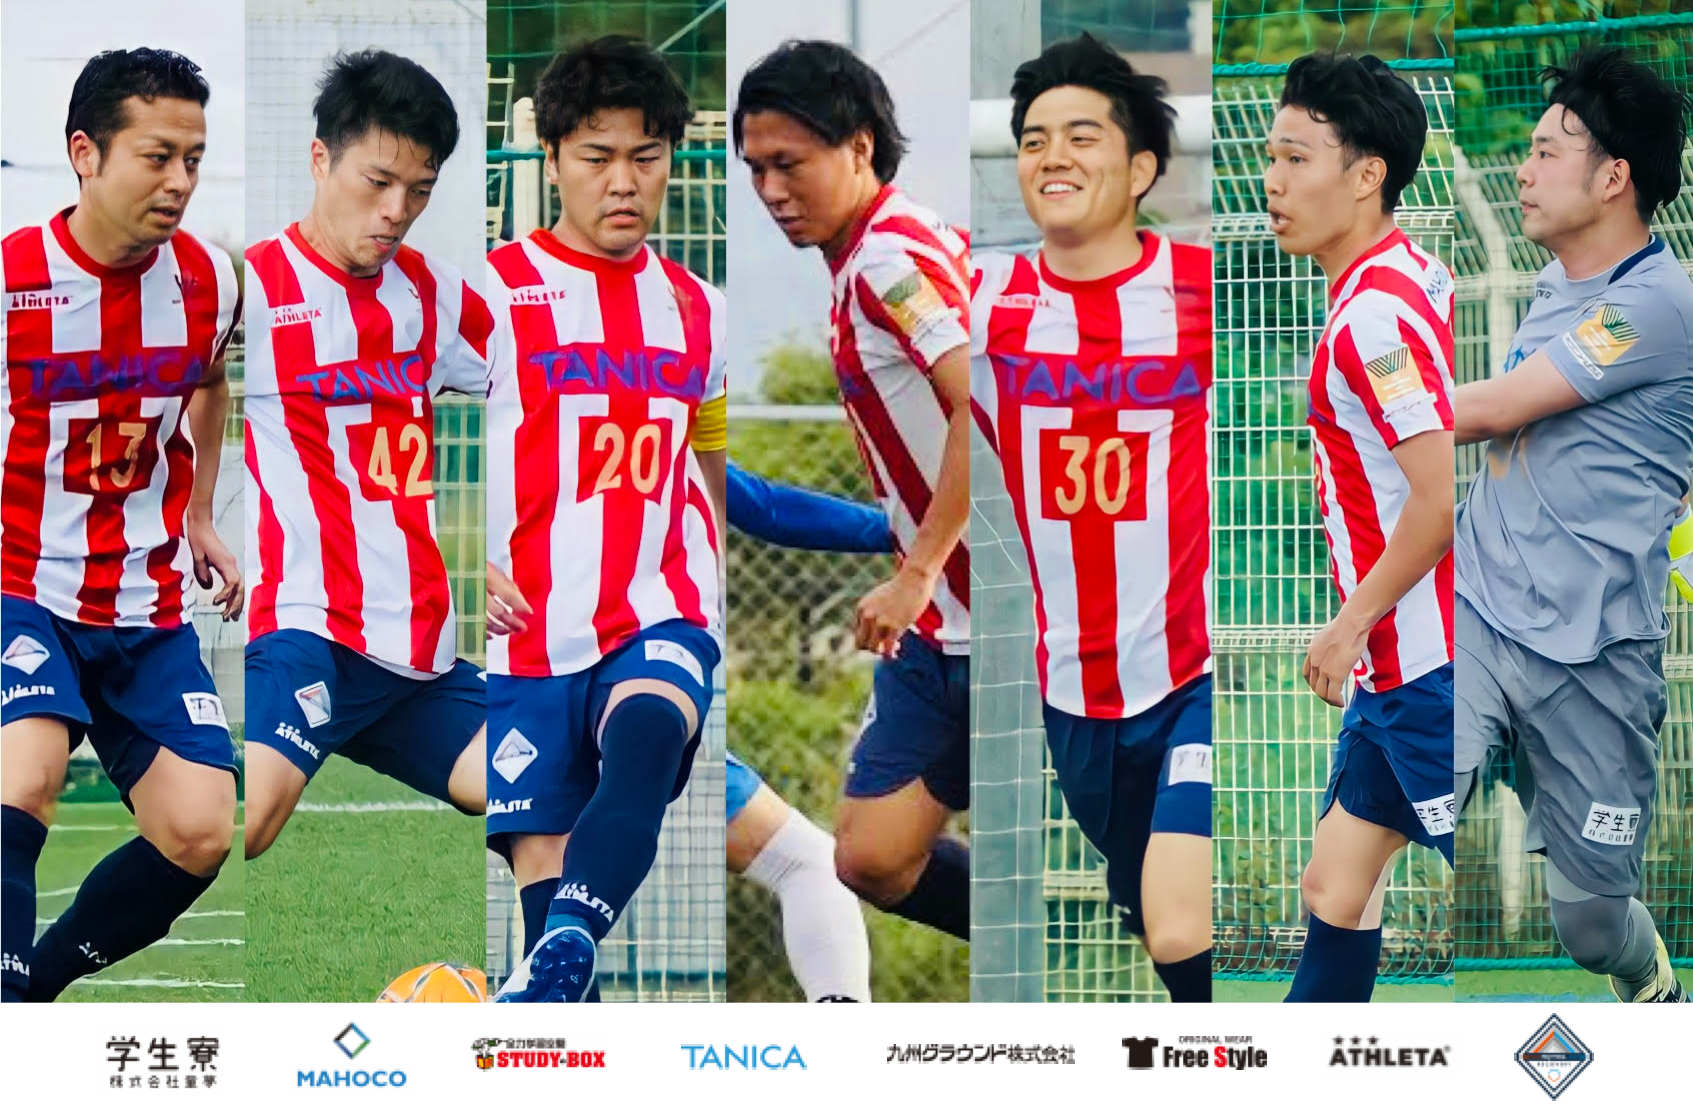 7人制サッカーソサイチチームac Hakataと業務提携のお知らせ アスリートの雇用創造とセカンドキャリアにおける選択肢拡大に向けて 株式会社スポーツフィールドのプレスリリース